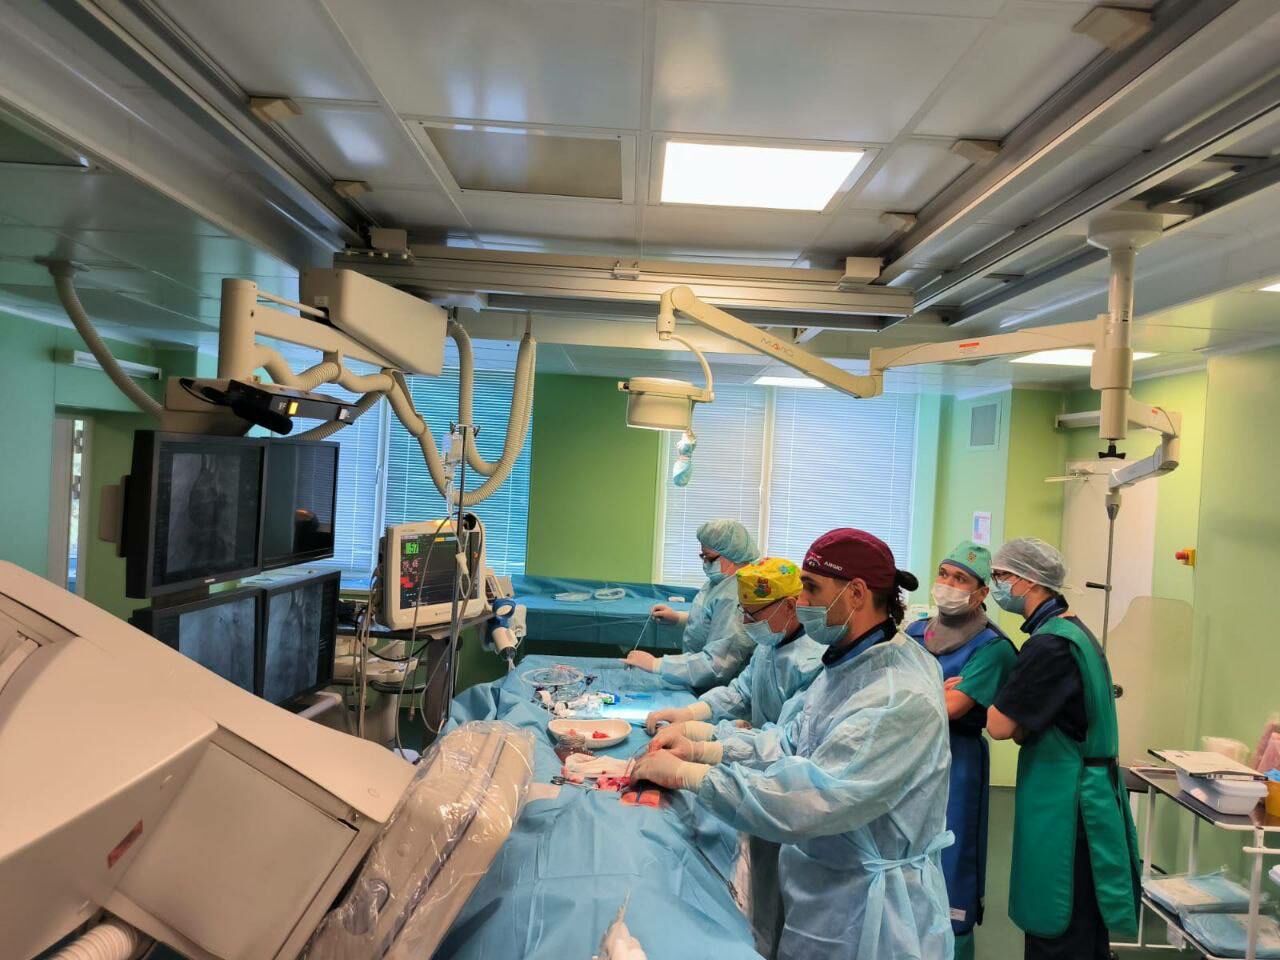 Хирург из Челнов установил 15-летнему подростку стент в аорту в ДРКБ